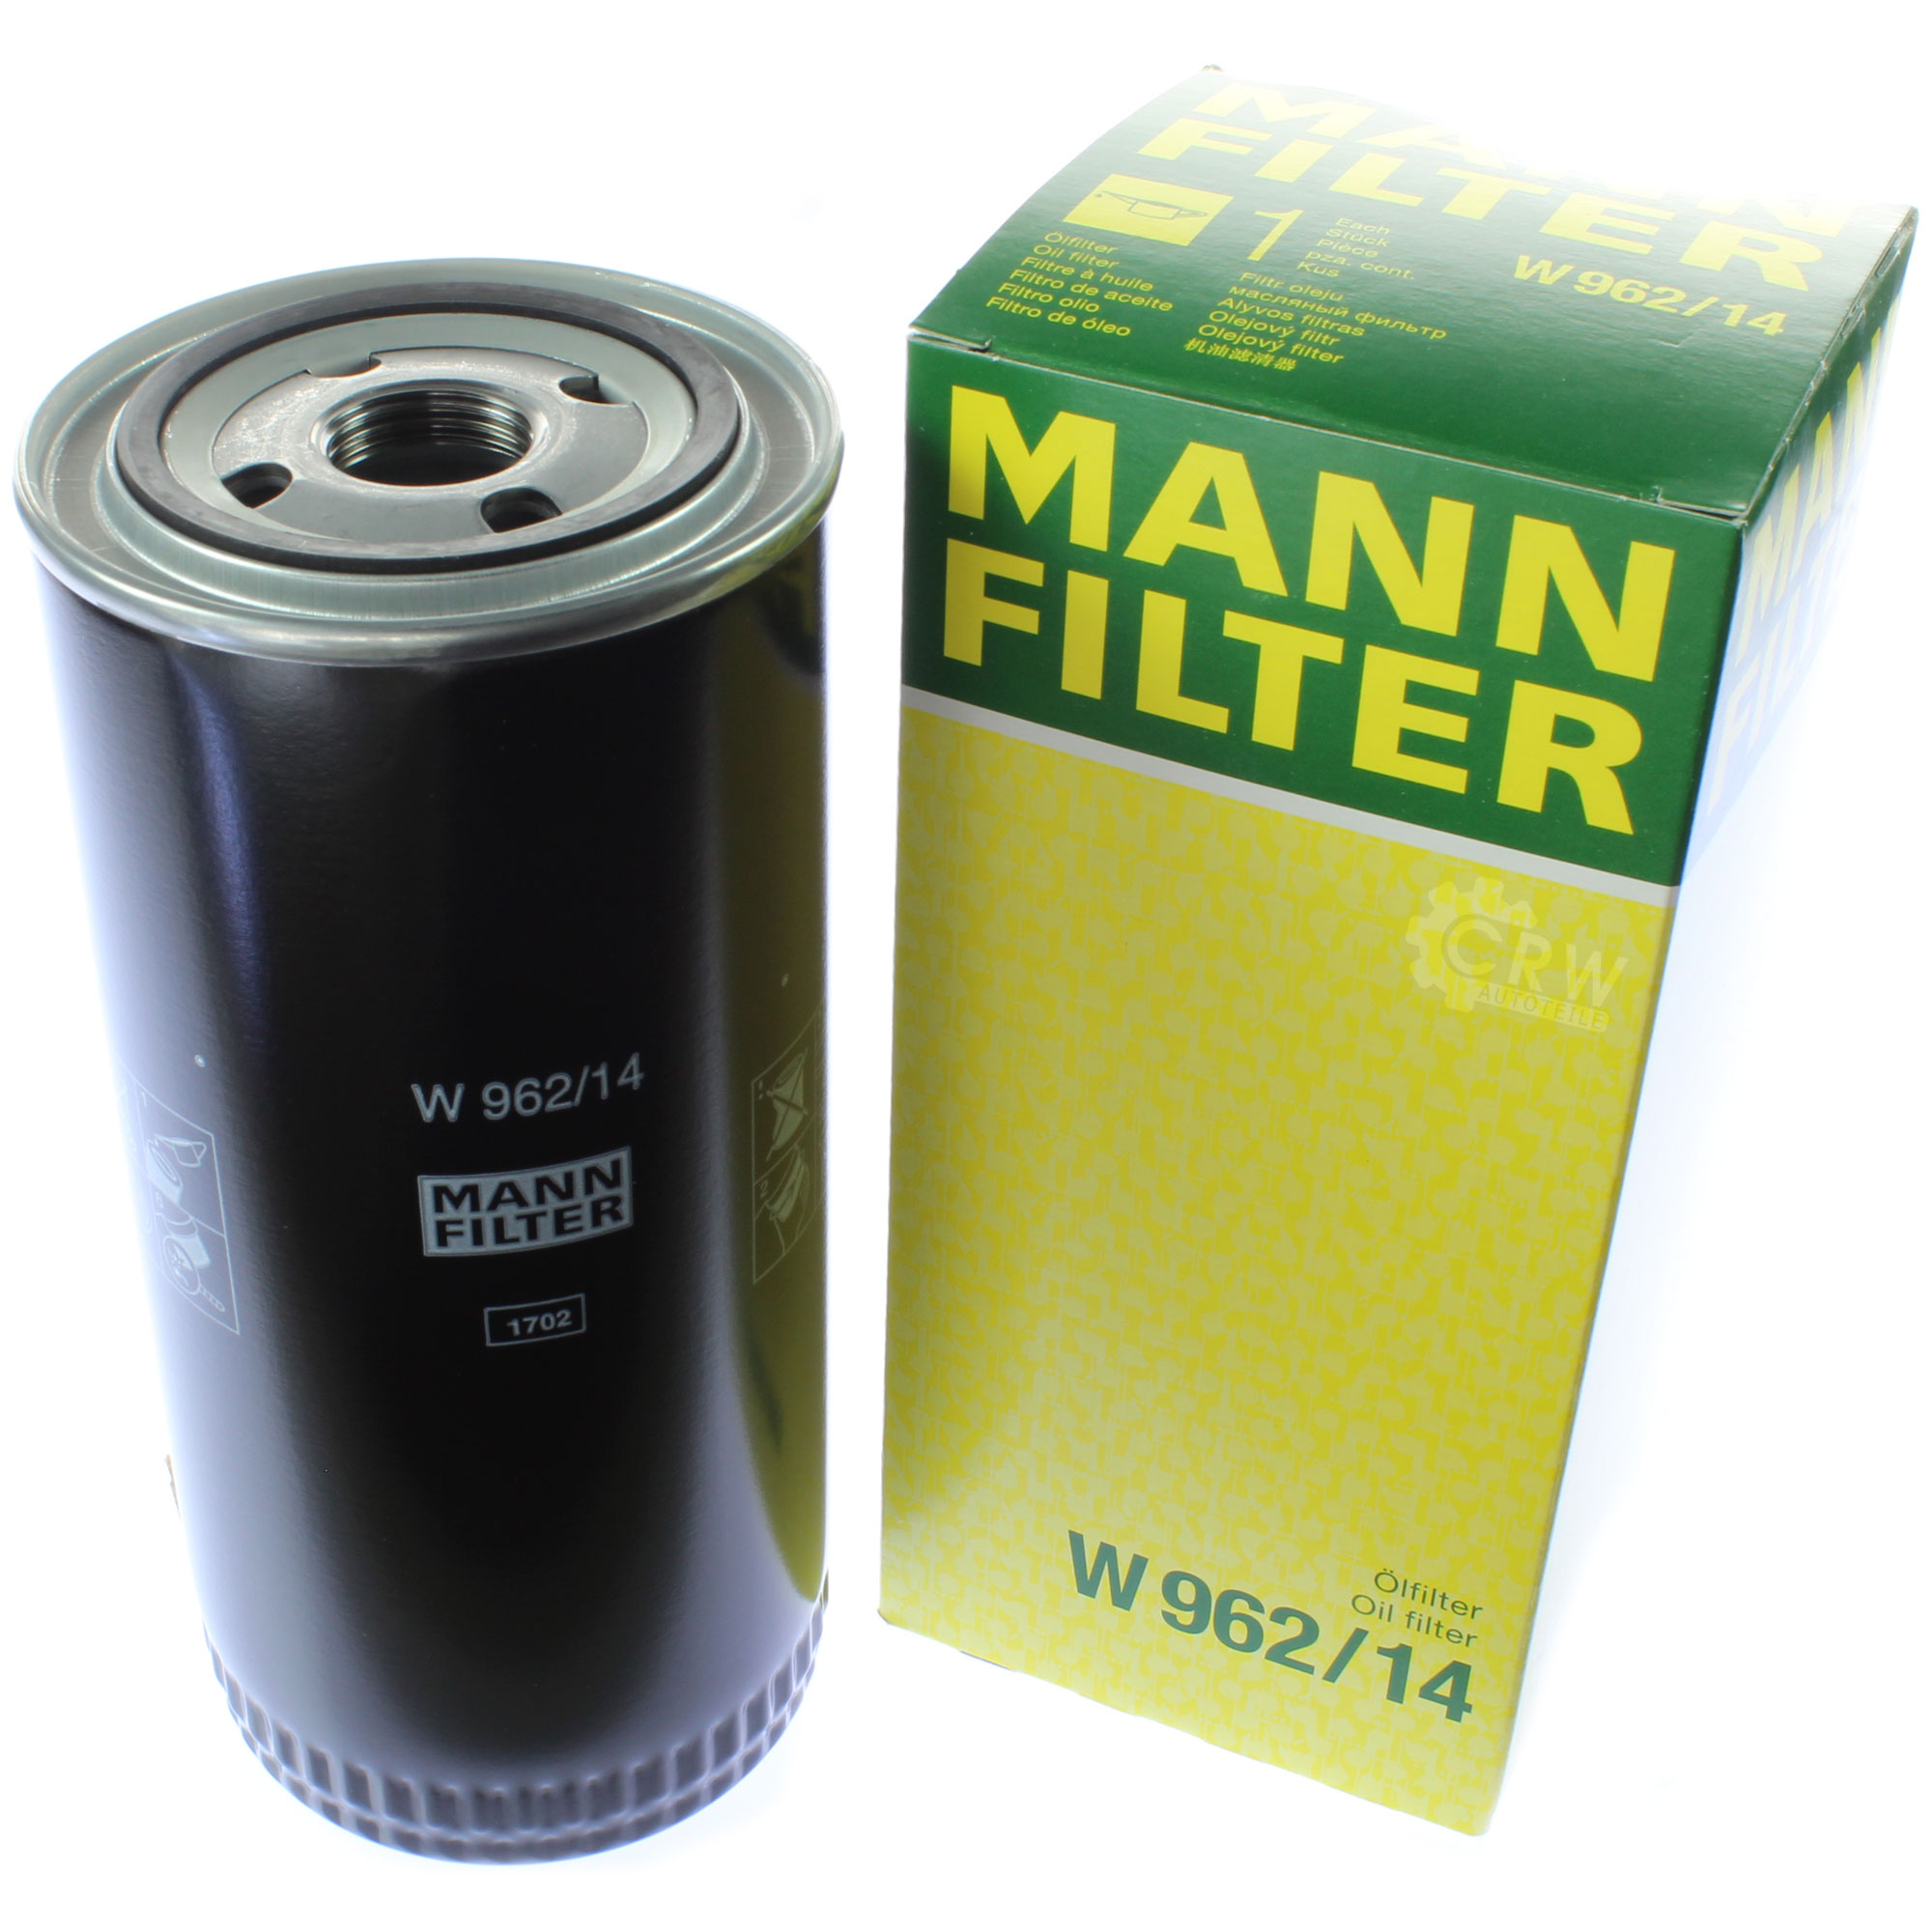 MANN-FILTER ÖlFILTER für Arbeitshydraulik W 962/14